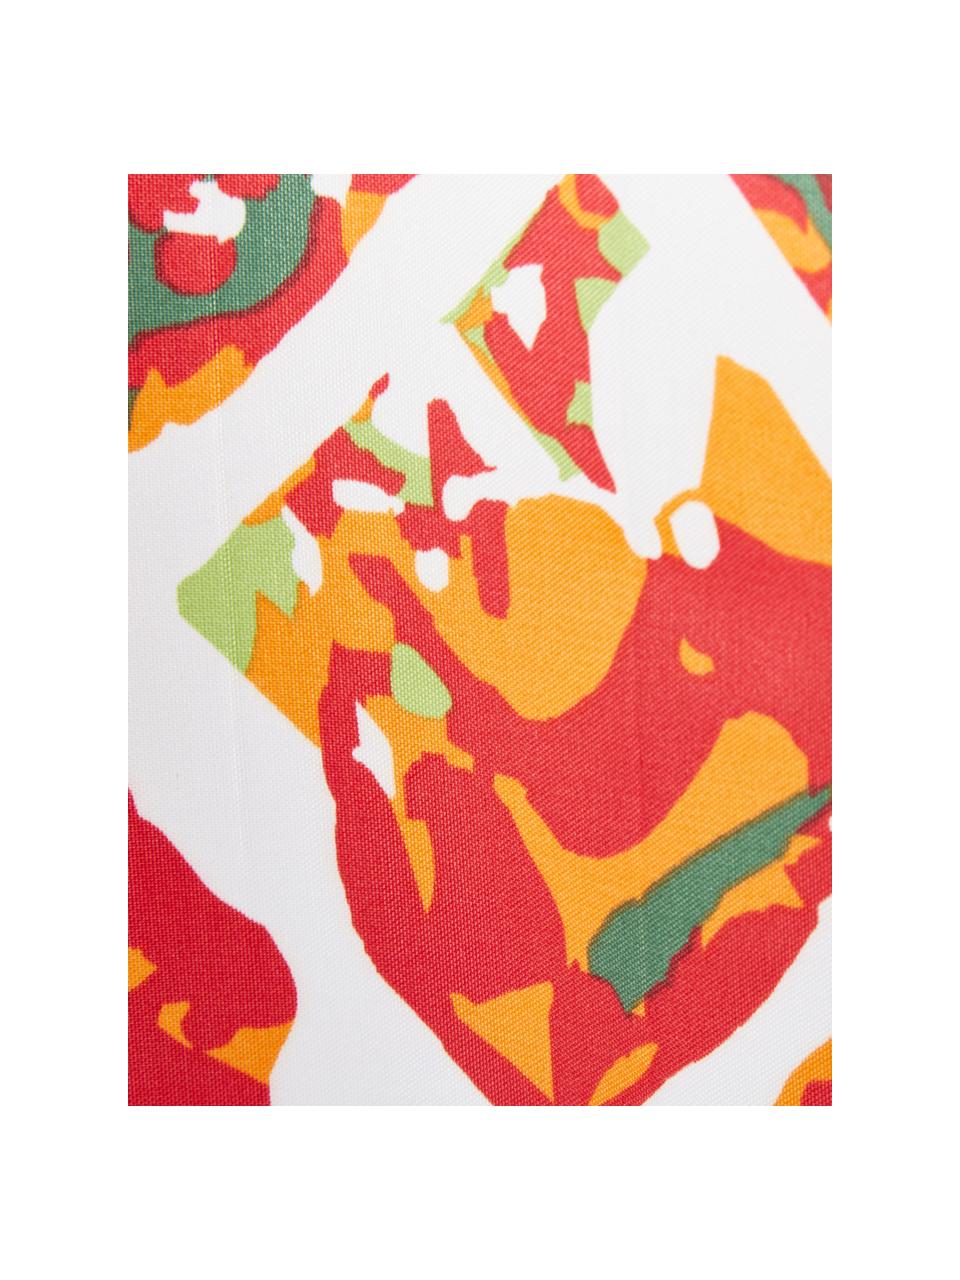 Duschvorhang Pineapple mit Ananas-Motiv, 100% Polyester
Wasserabweisend, nicht wasserdicht, Weiß, Grün, Orange, Rot, 180 x 200 cm